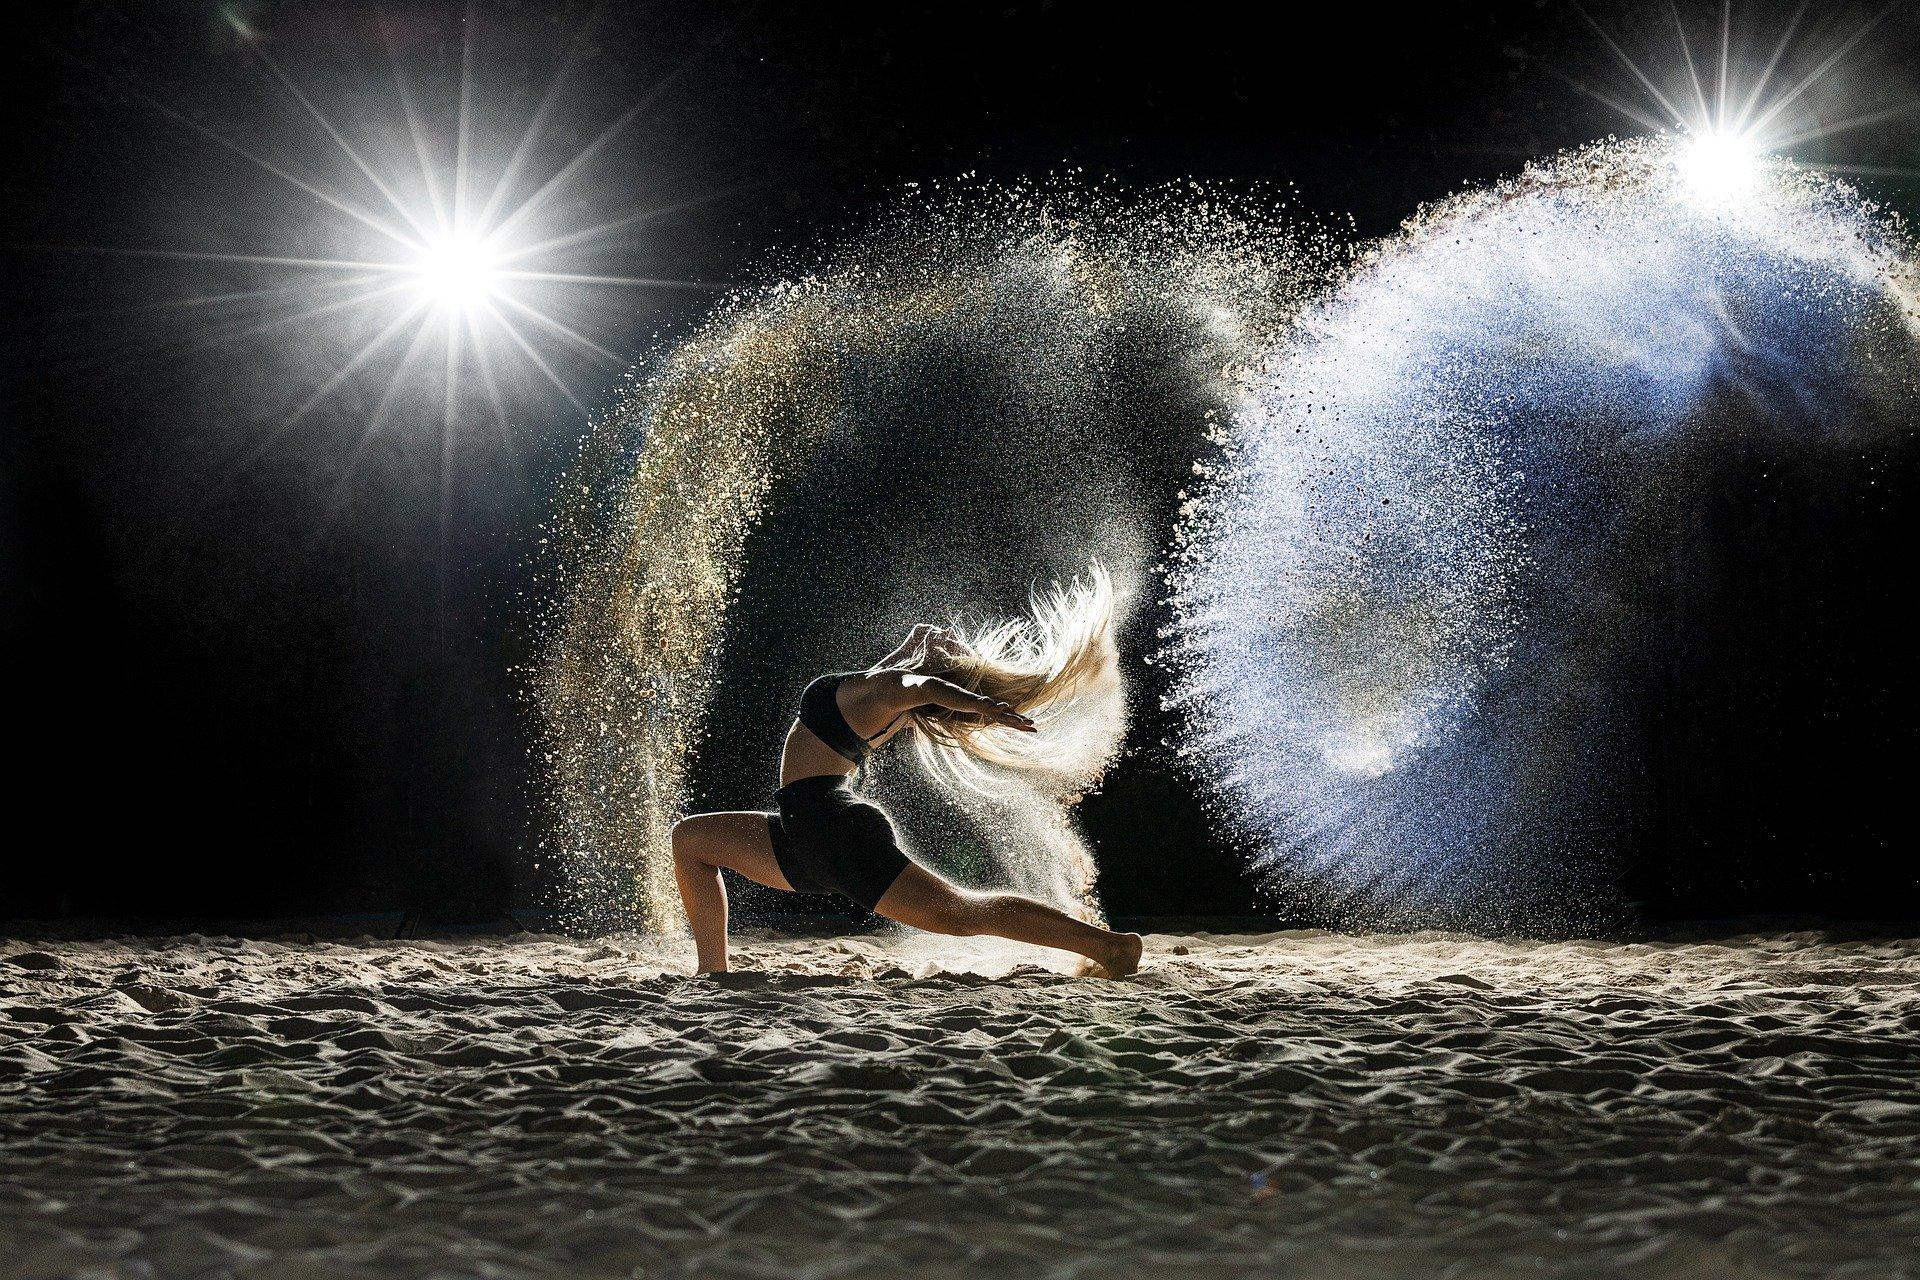 Dancer, dancing, sand. Picture by marcelkessler on Pixabay.